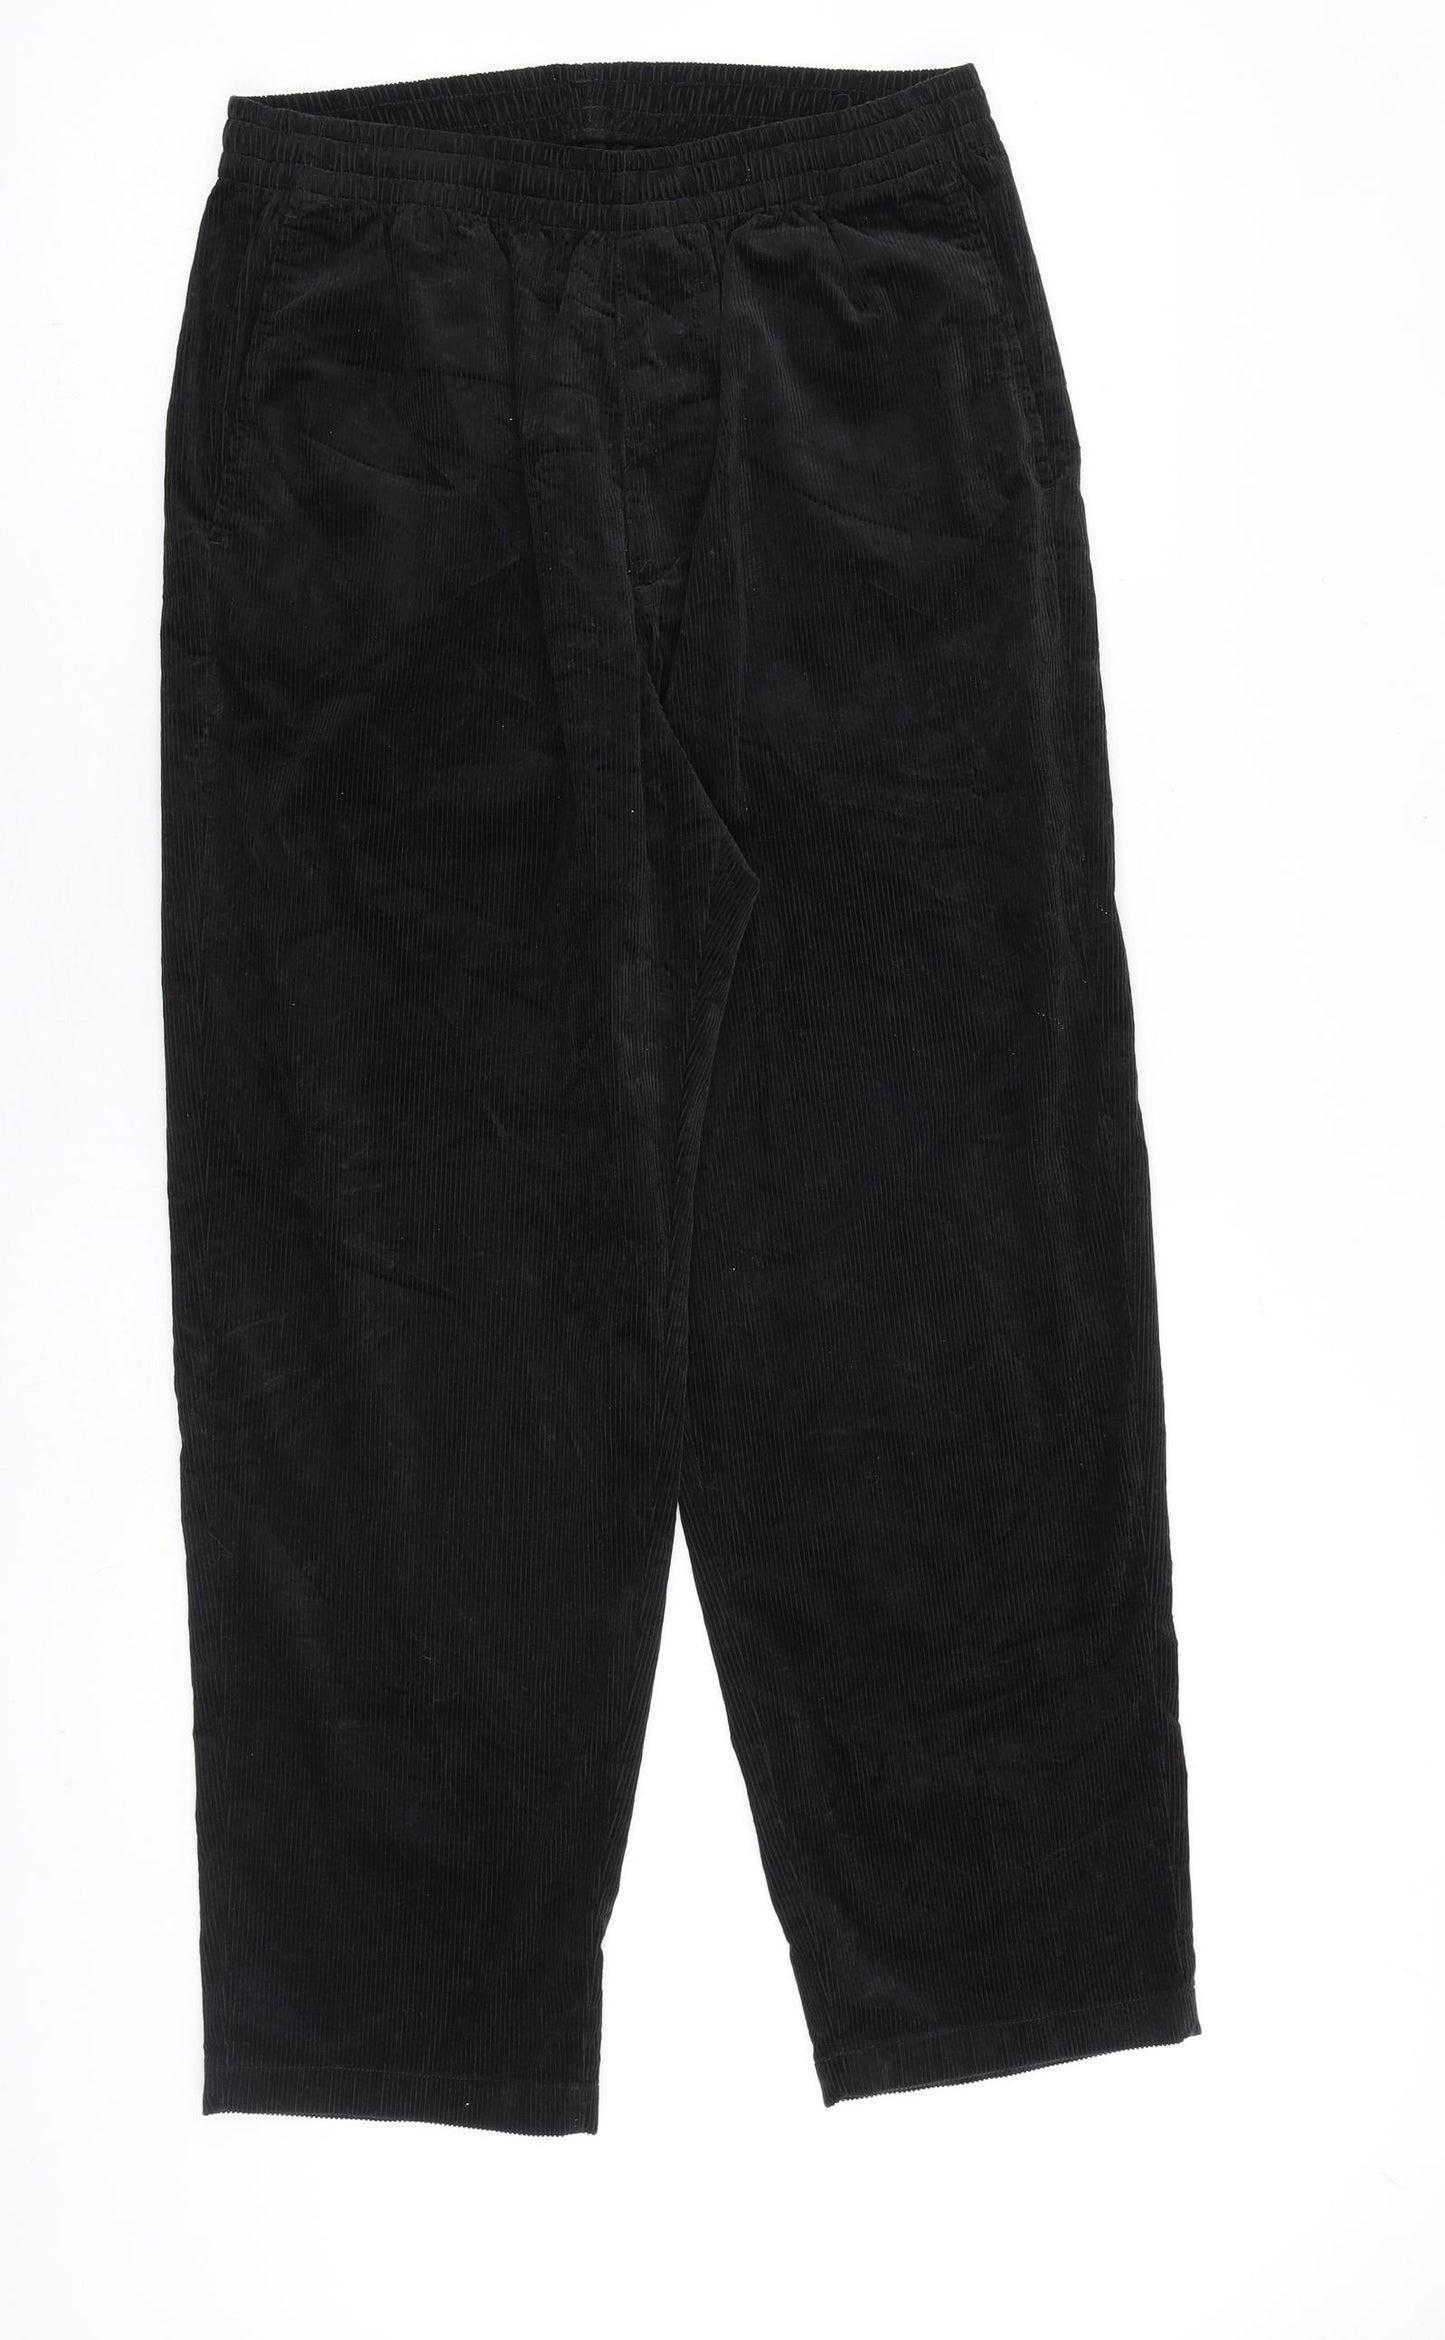 Uniqlo Mens Black Cotton Trousers Size 30 in L33 in Regular